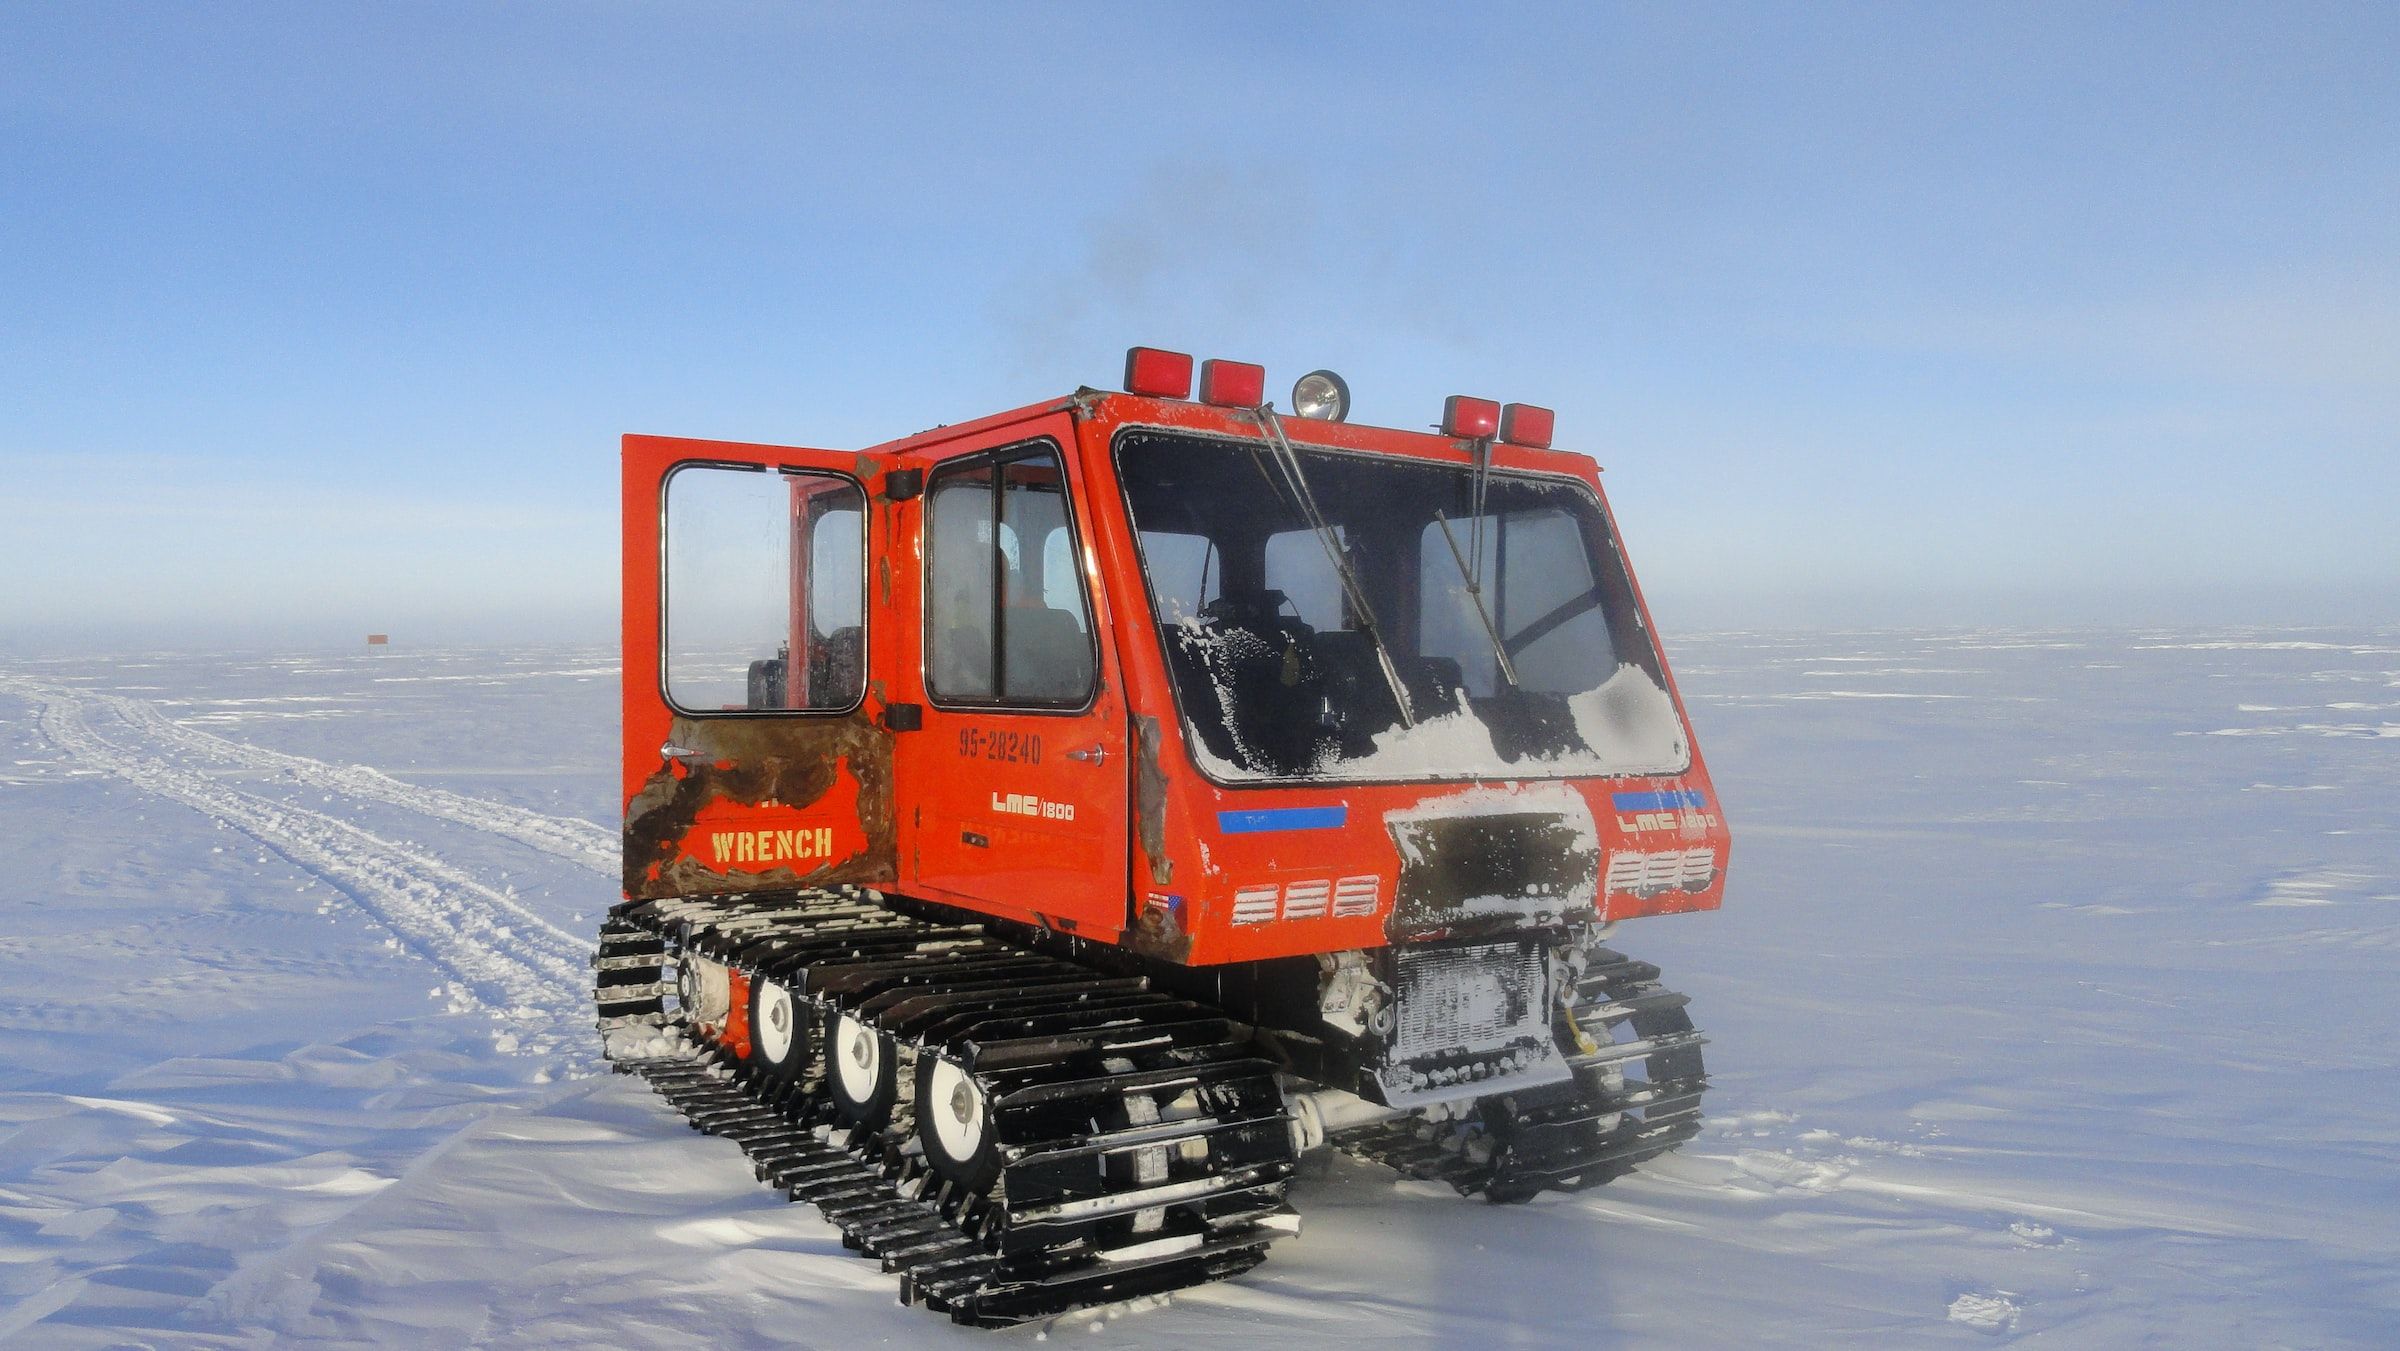 Snow vehicle